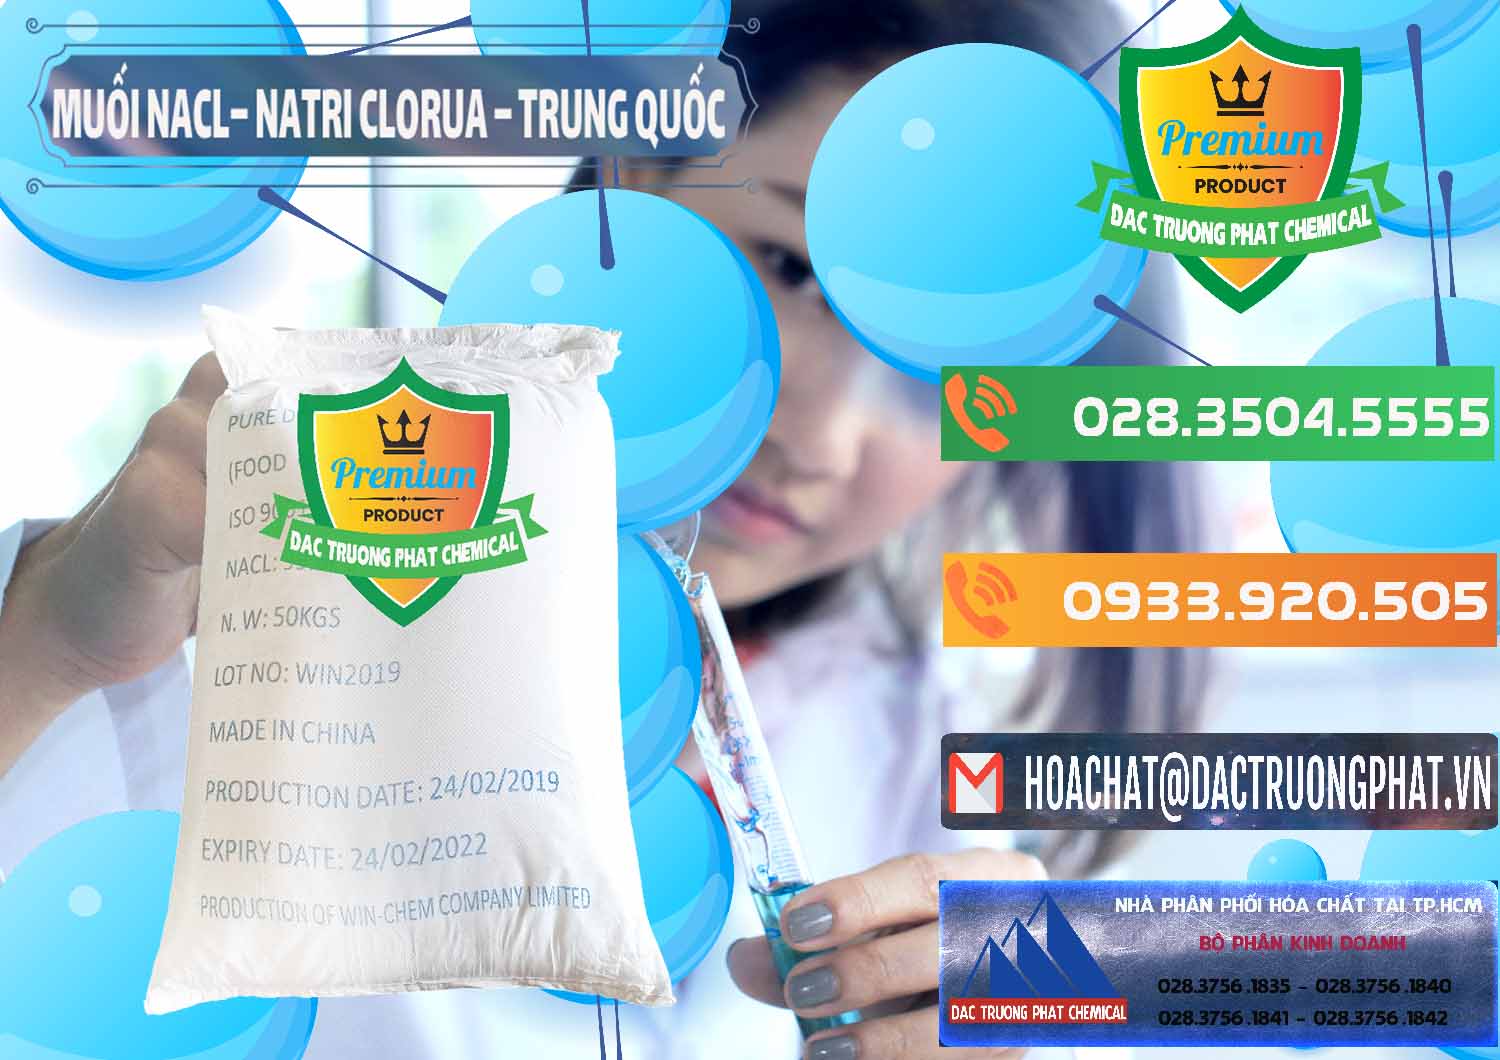 Cty chuyên bán và cung ứng Muối NaCL – Sodium Chloride Trung Quốc China - 0097 - Đơn vị chuyên kinh doanh & cung cấp hóa chất tại TP.HCM - hoachatxulynuoc.com.vn